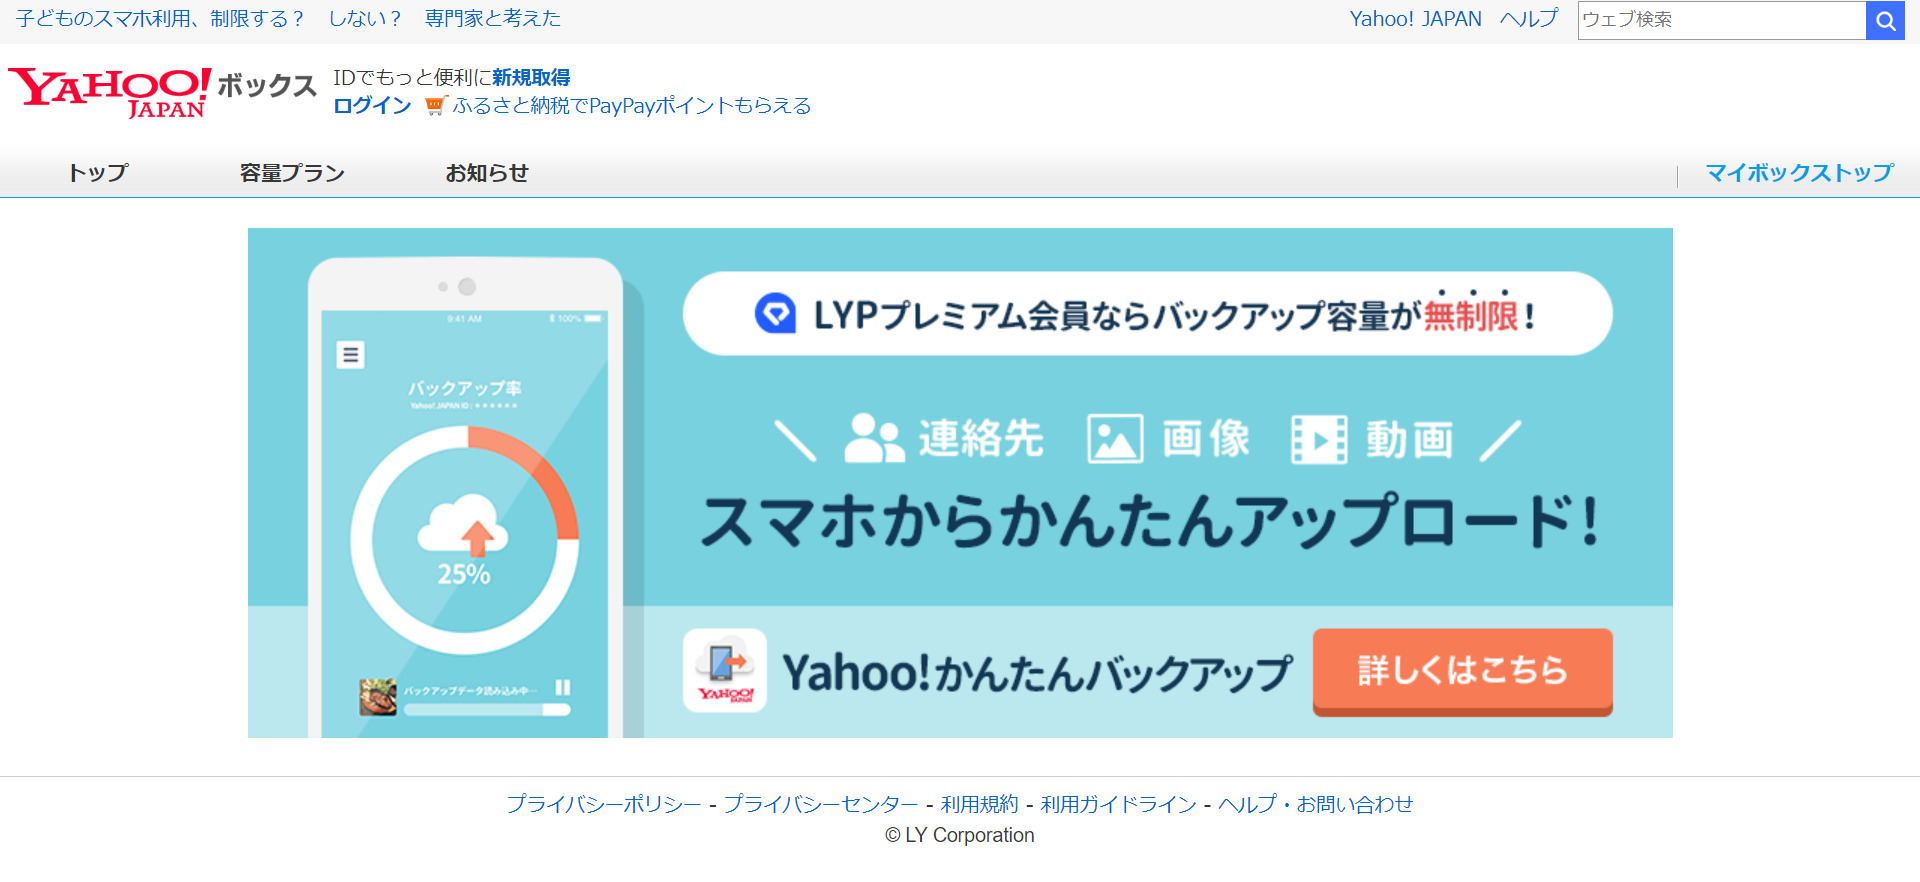 Yahoo!ボックスのトップページ